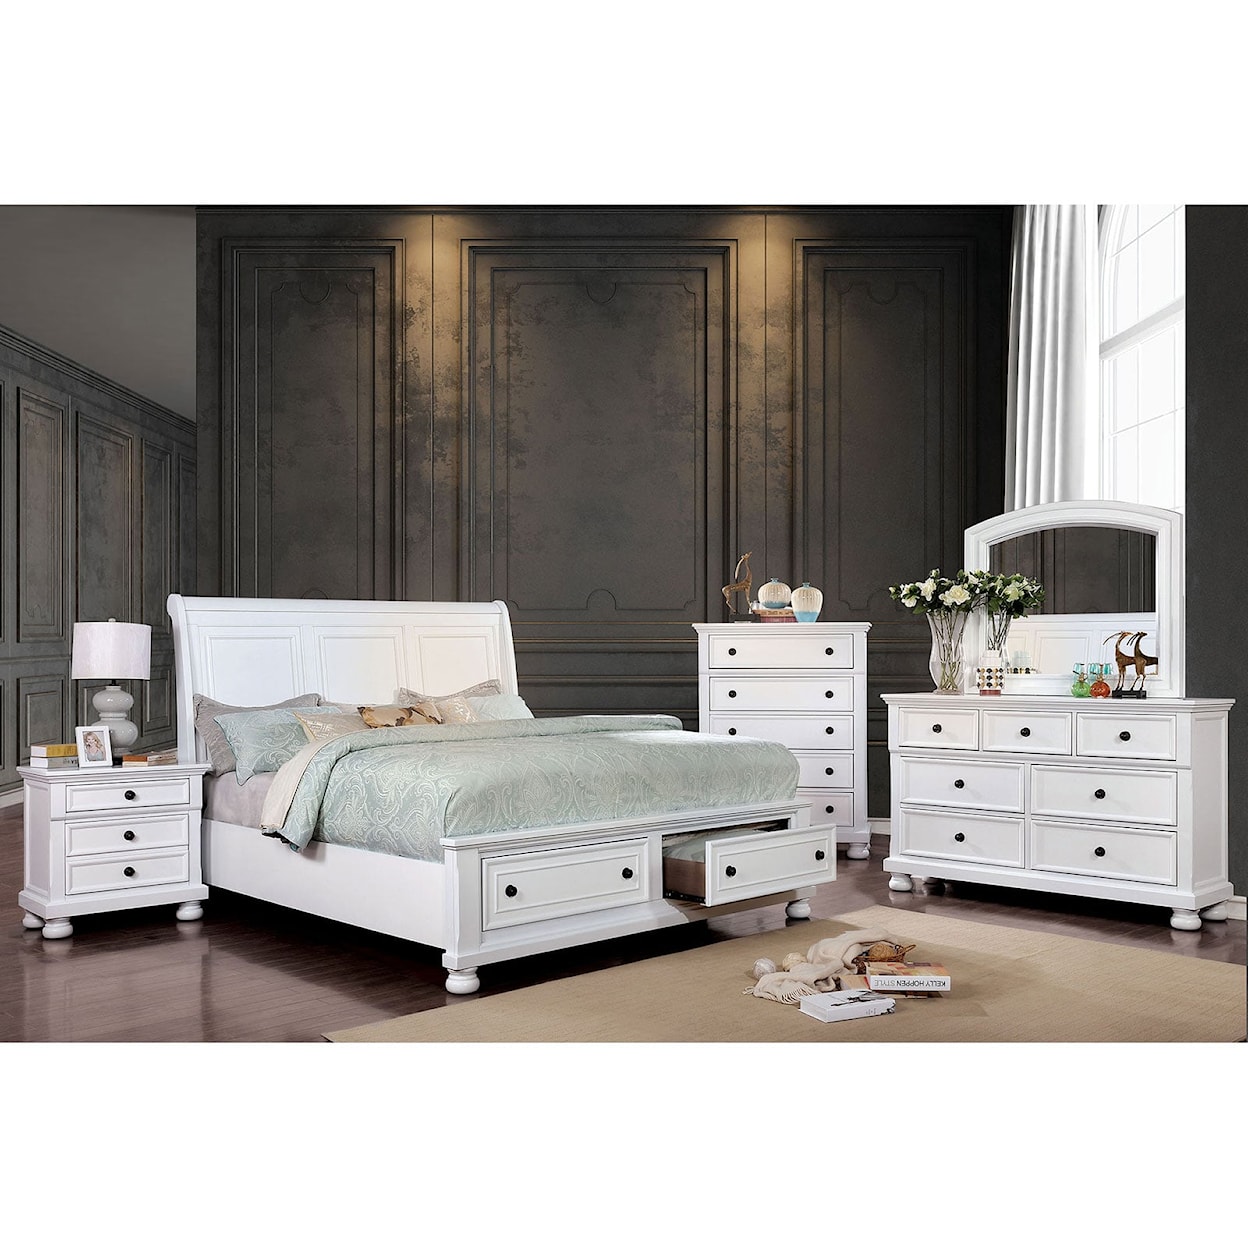 Furniture of America - FOA Castor 4 Pc. Queen Bedroom Set